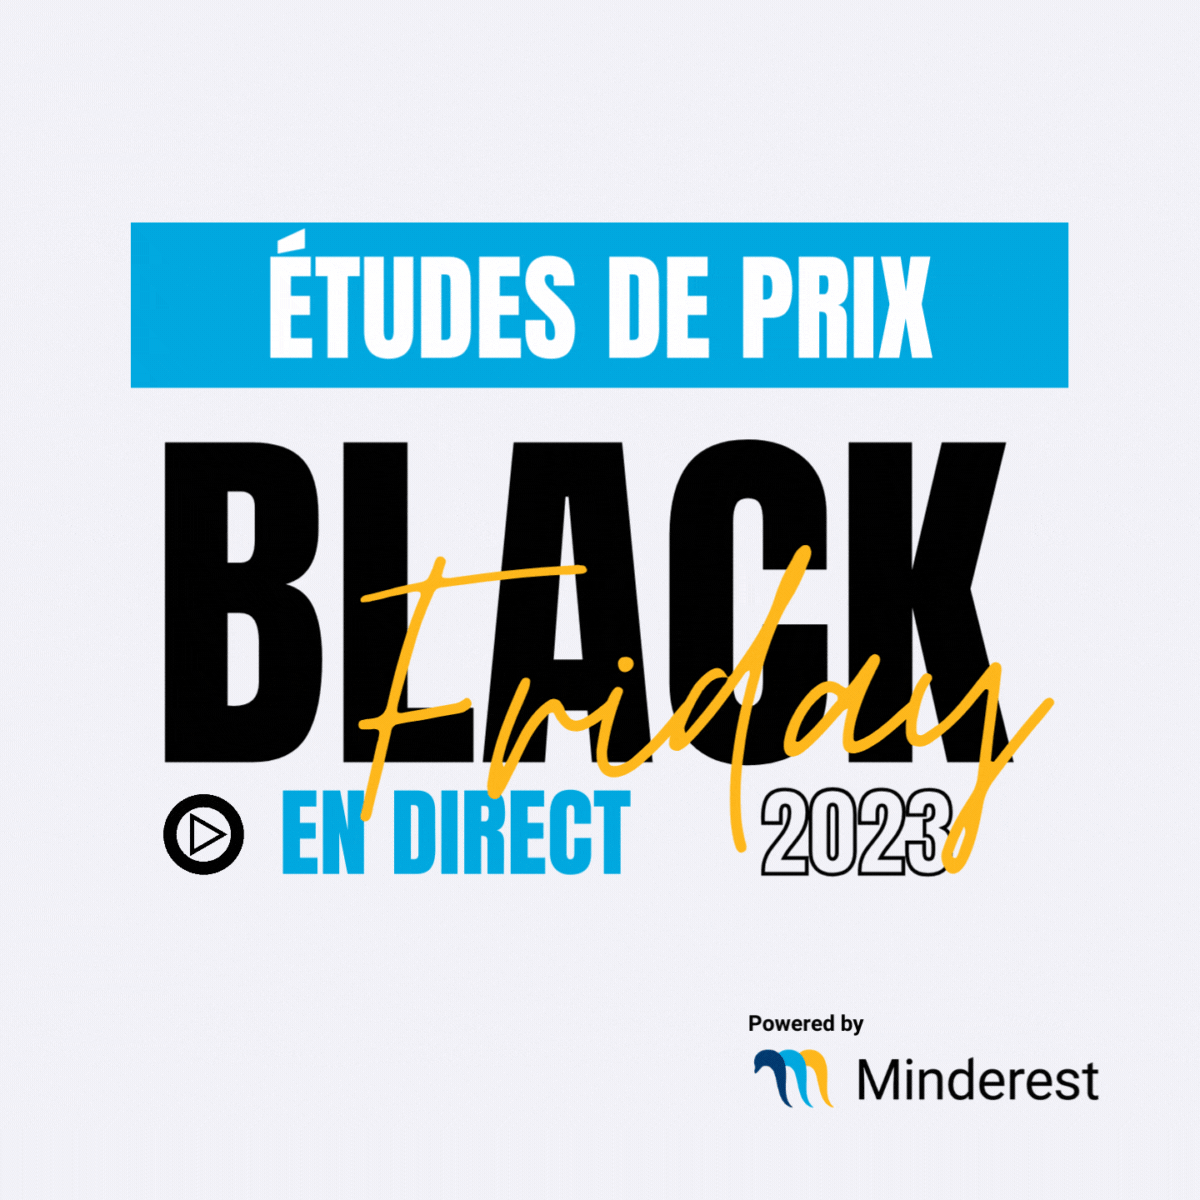 Études de prix du Black Friday 2023 France en direct